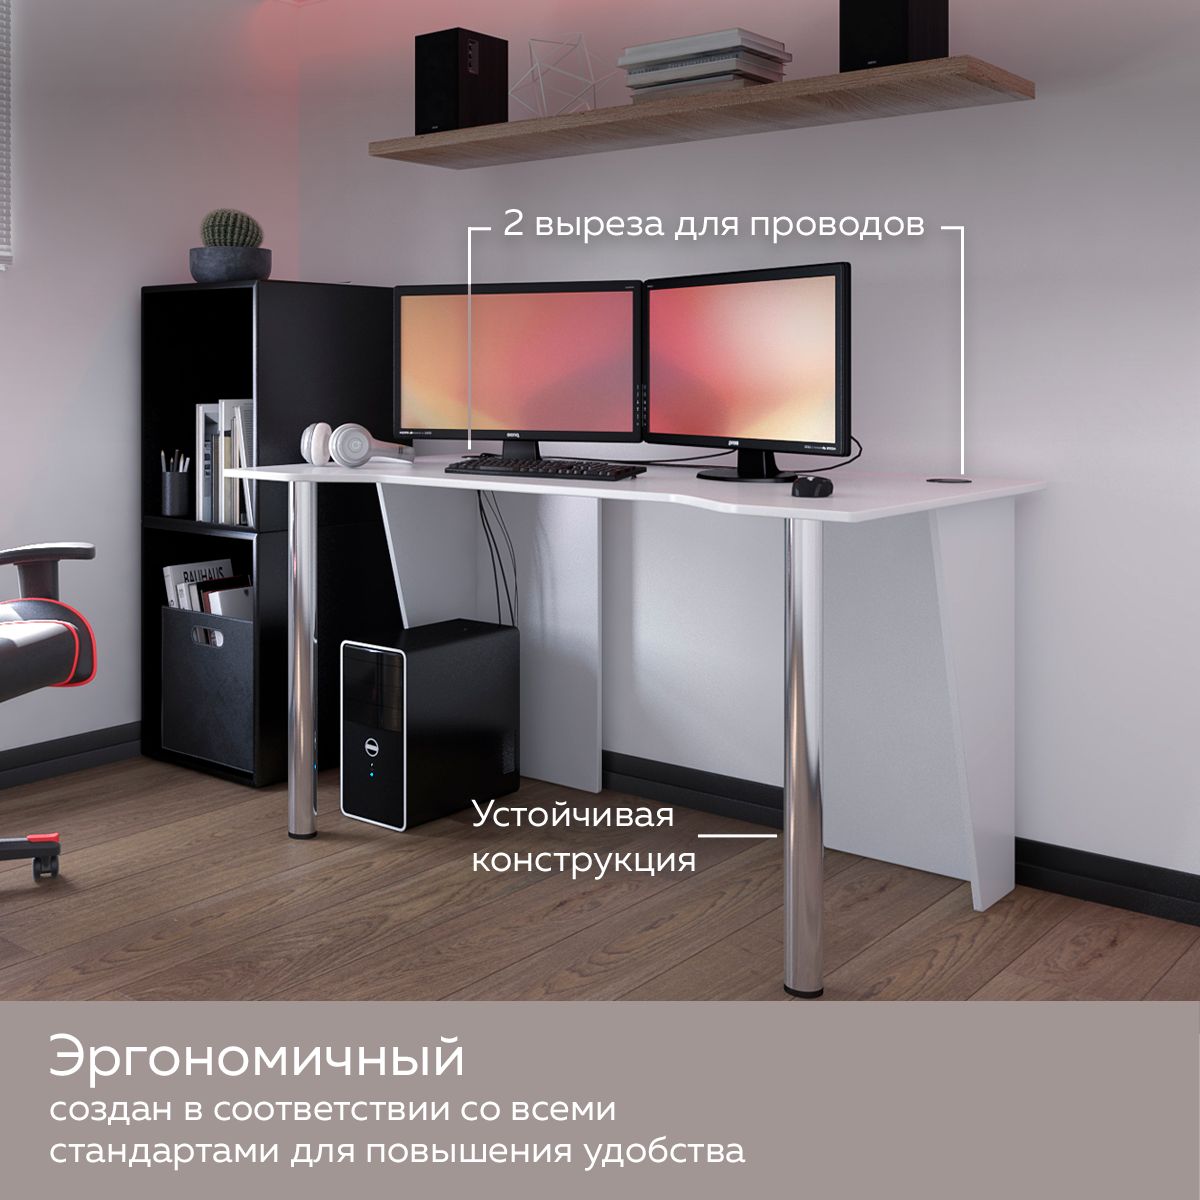 Дизайн кухонь с примерами работ в Москве